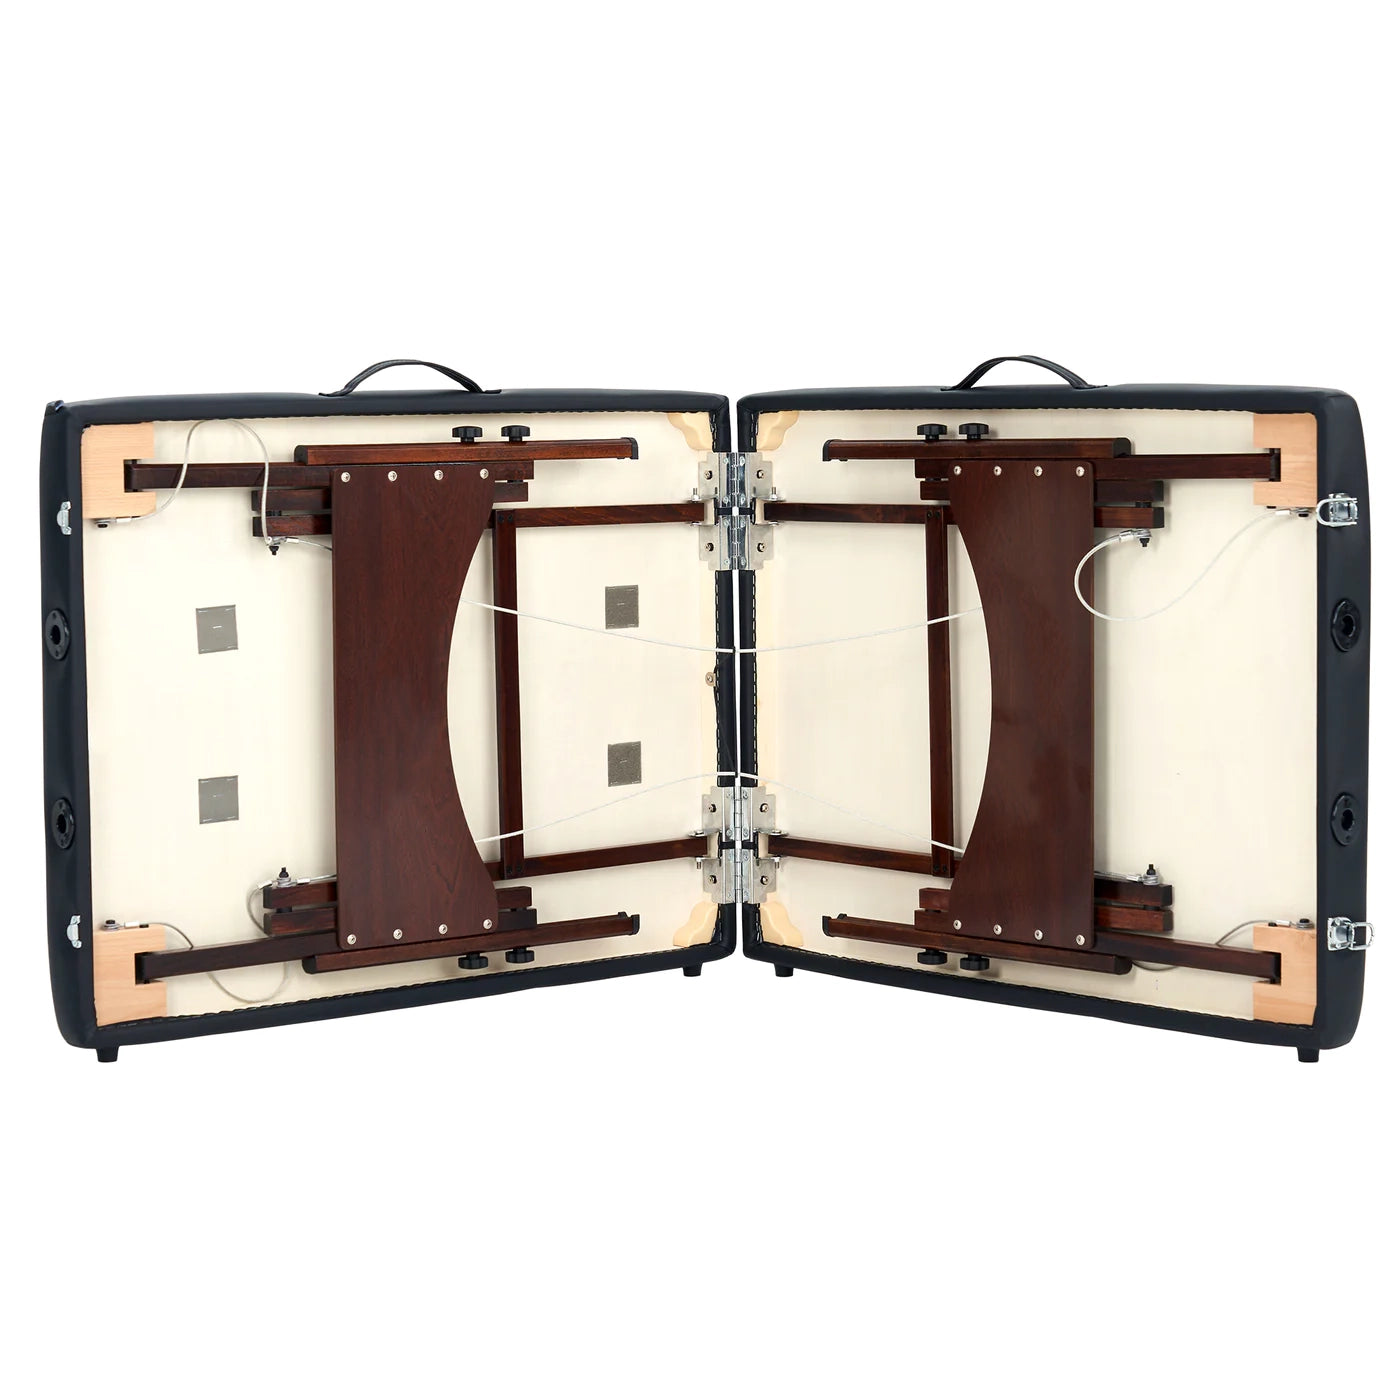 Spabodega 28" Argo Portable Massage Table Package in Black Upholstery, Walnut Legs